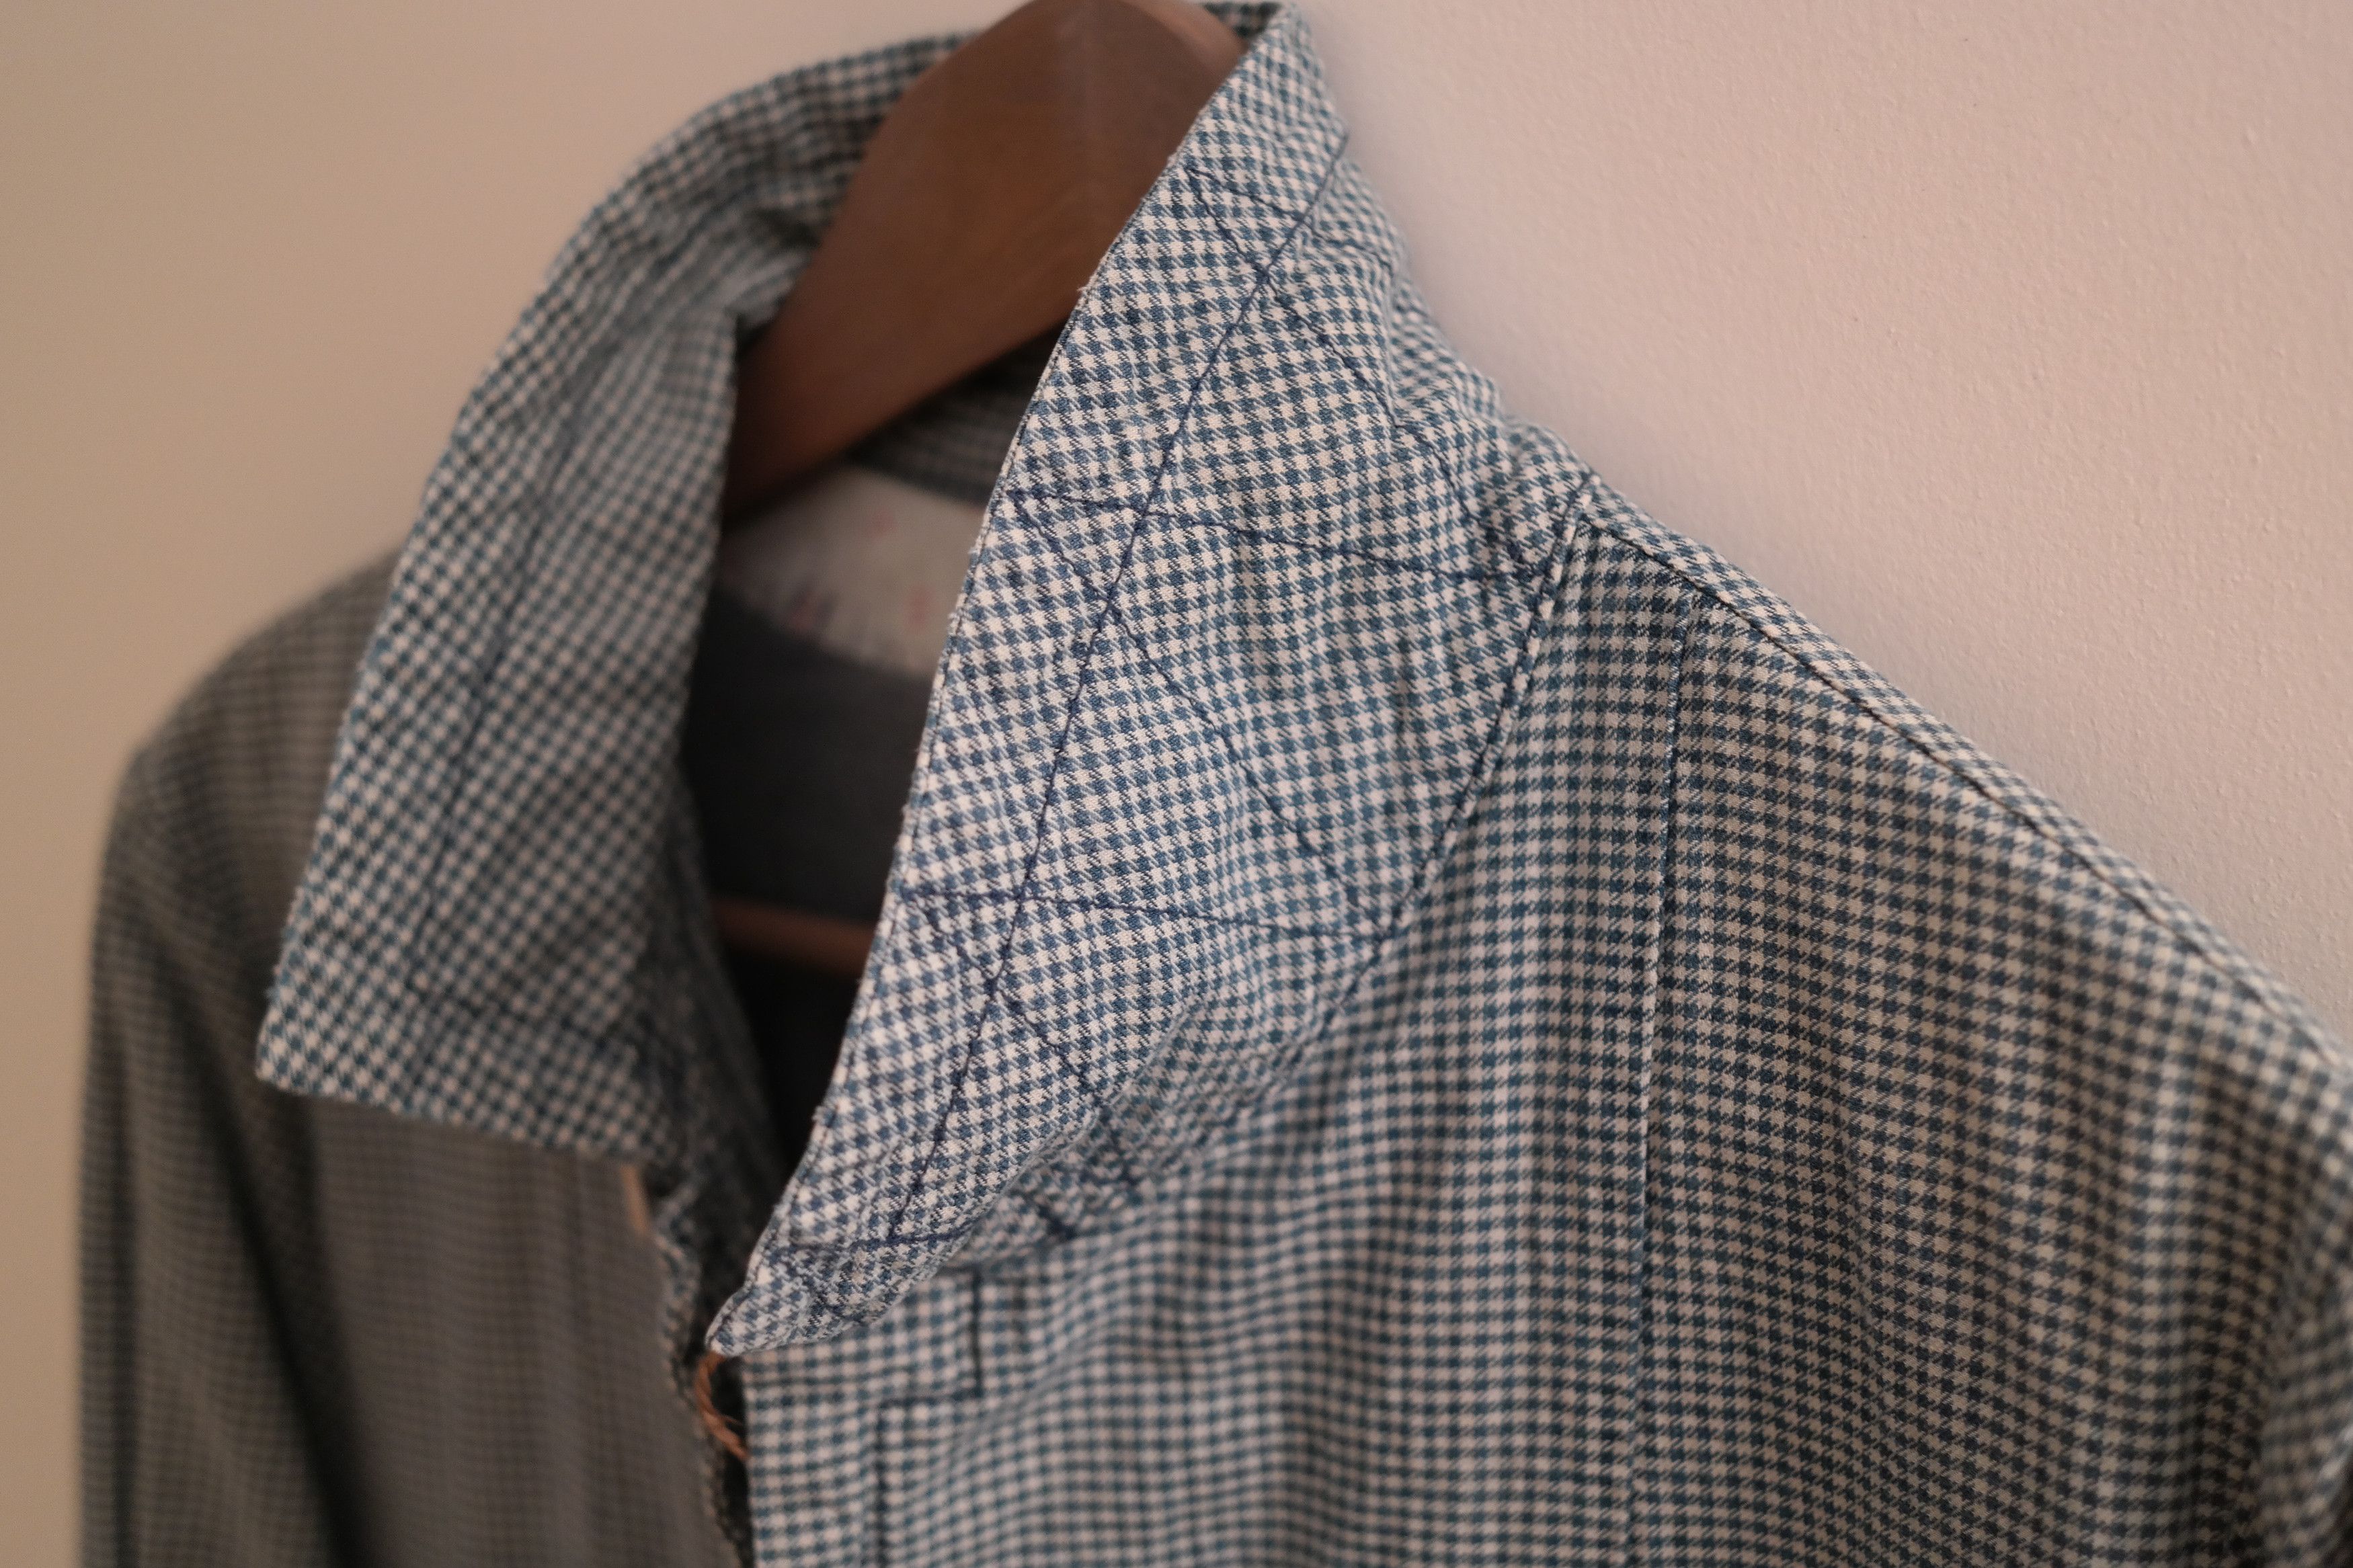 Visvim Mies Coat Indigo Check Size US M / EU 48-50 / 2 - 3 Thumbnail